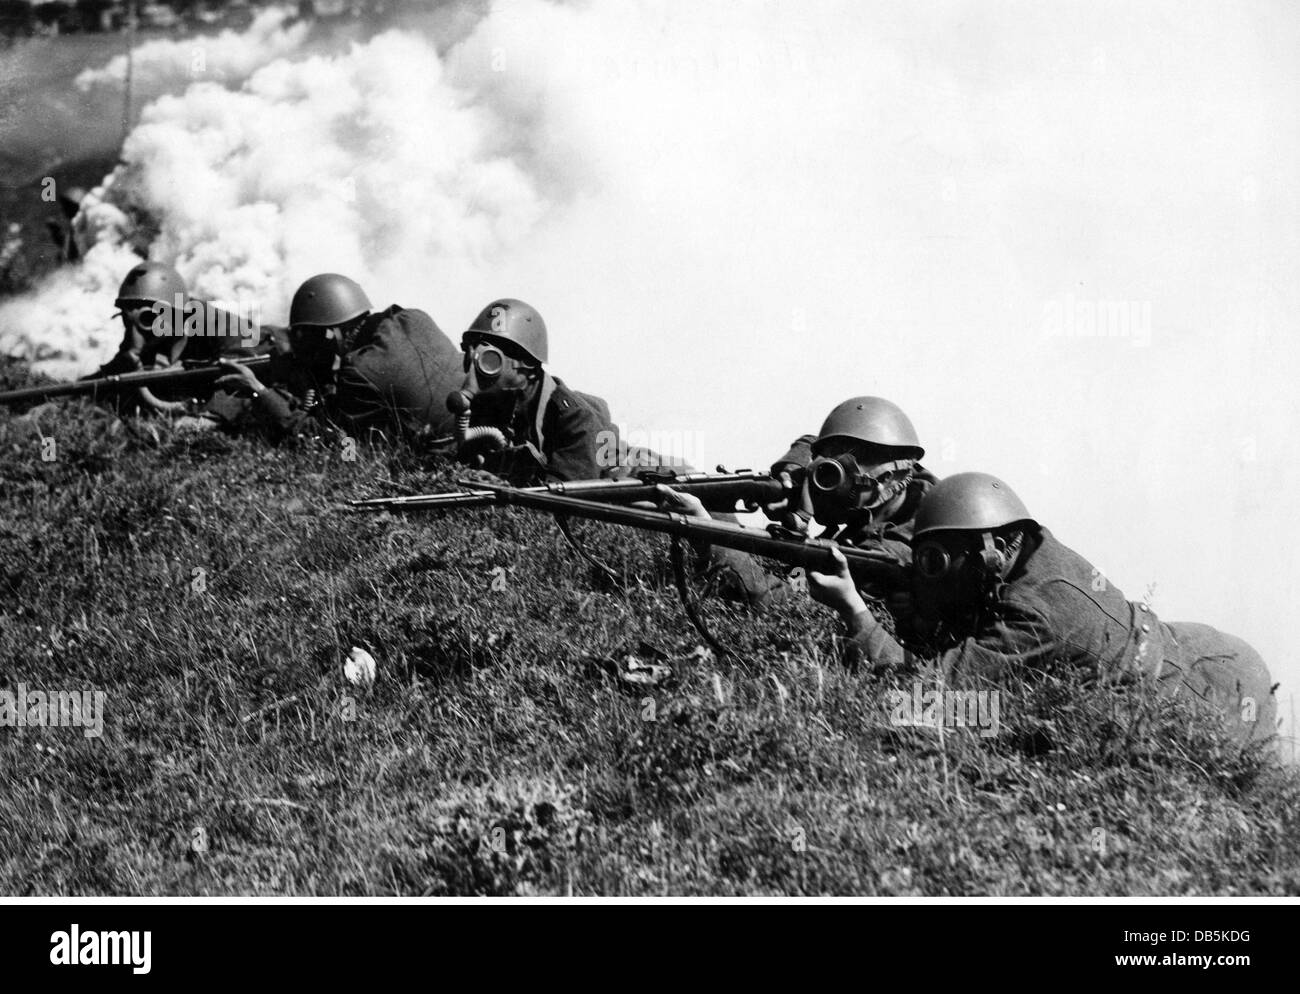 Militare, Italia, fanteria, fanteria italiana con maschere a gas durante un esercizio, circa 1940, diritti aggiuntivi-clearences-non disponibili Foto Stock